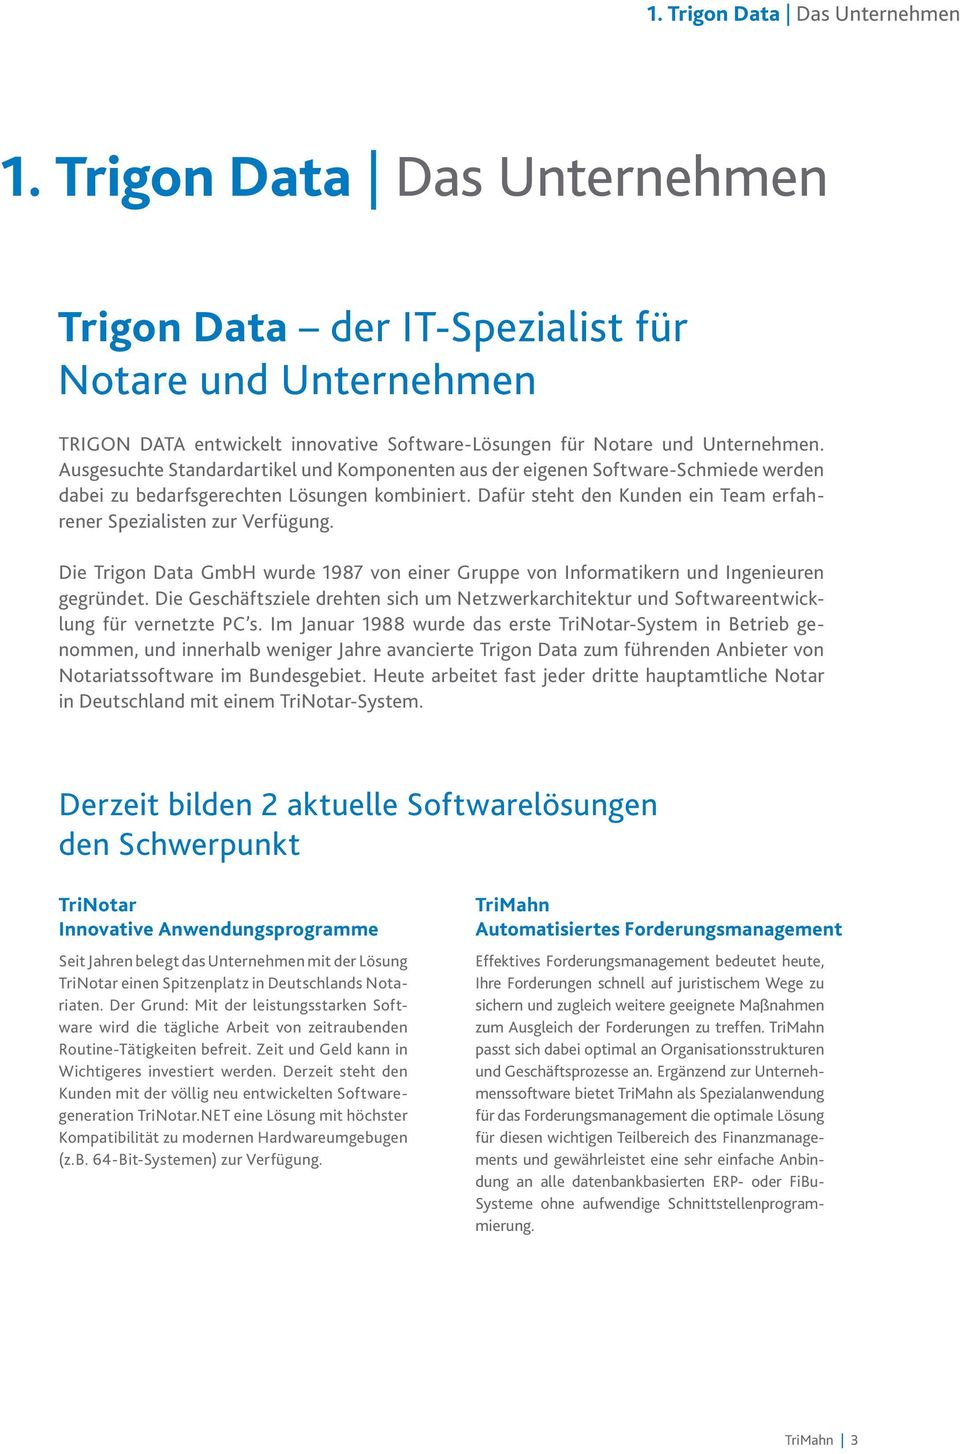 Dafür steht den Kunden ein Team erfahrener Spezialisten zur Verfügung. Die Trigon Data GmbH wurde 1987 von einer Gruppe von Informatikern und Ingenieuren gegründet.